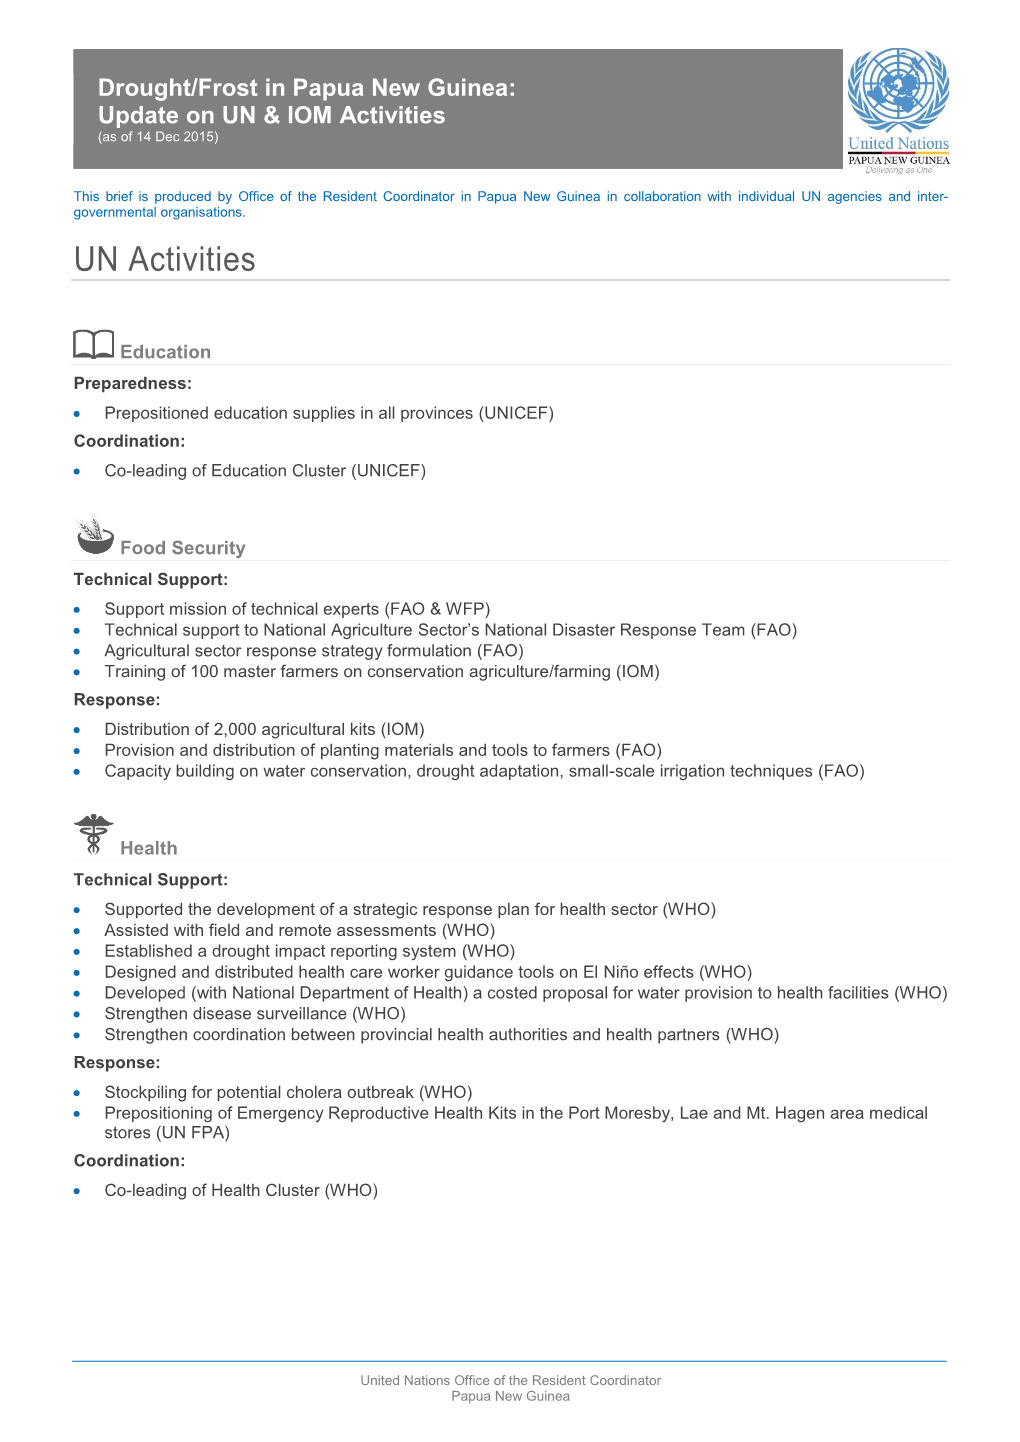 UN Activities